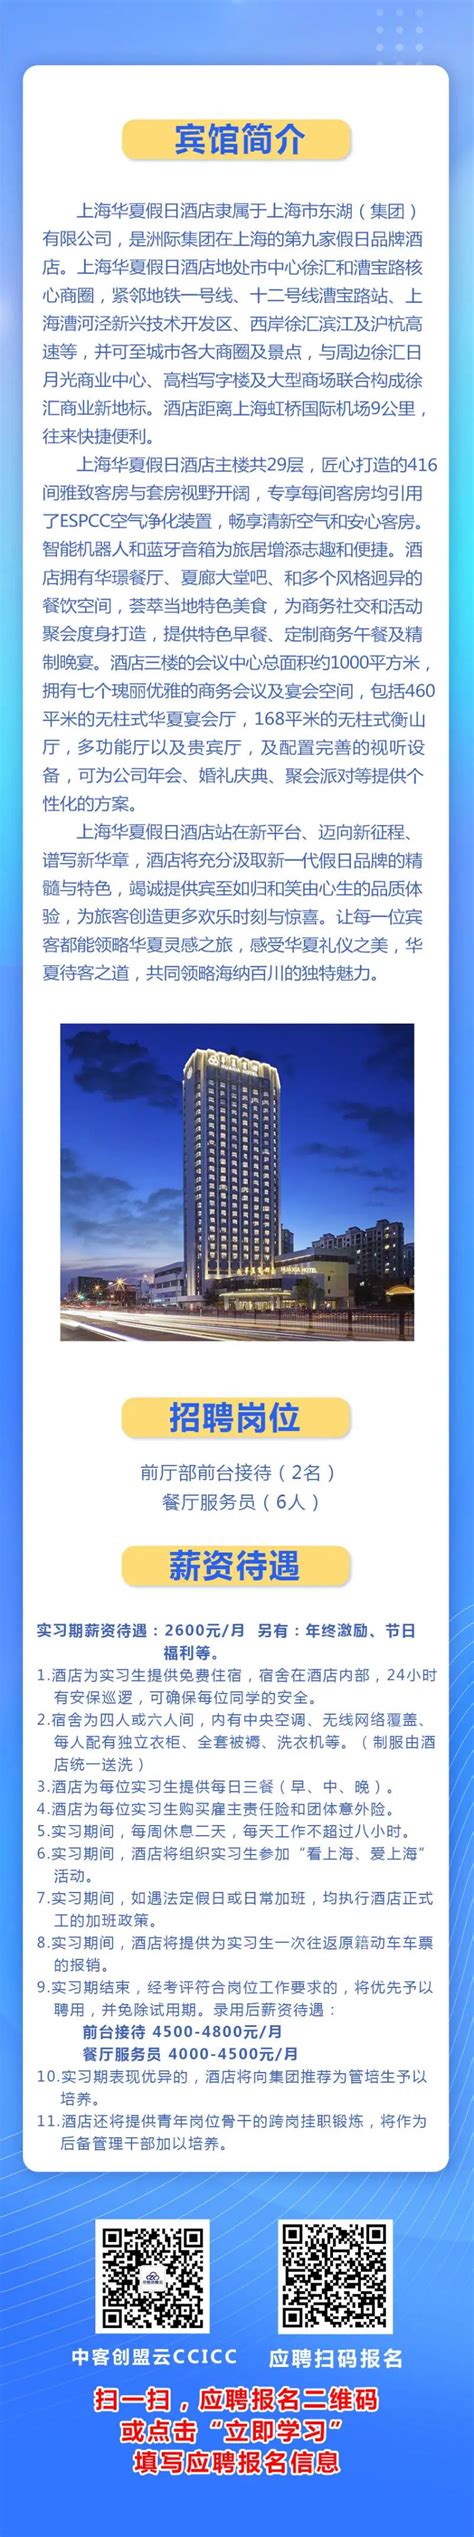 上海凯宾斯基大酒店|公开招聘日